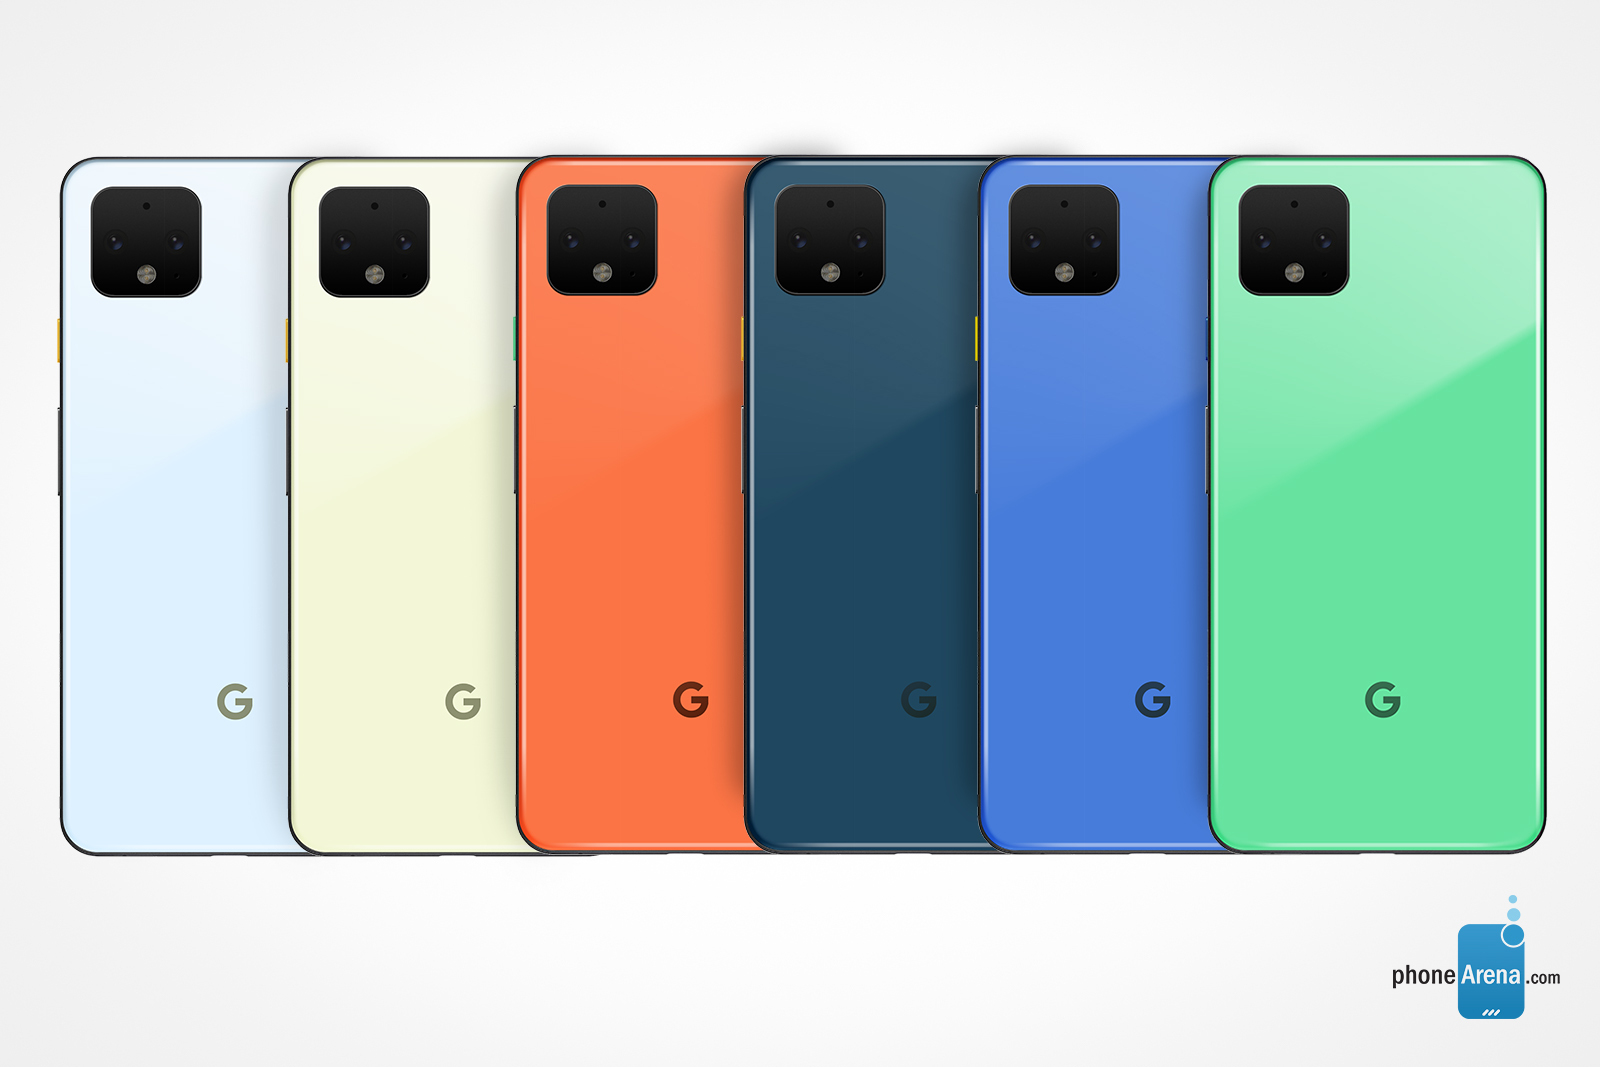 Konsep desain Google Pixel 4 di Androdid Green, Biru, Biru Tua, Oranye, Chartreuse, dan Pattens Blue - Pilihan warna Pixel 4 baru berdasarkan palet refresh Android 10 yang dibayangkan dalam pembuatan konsep